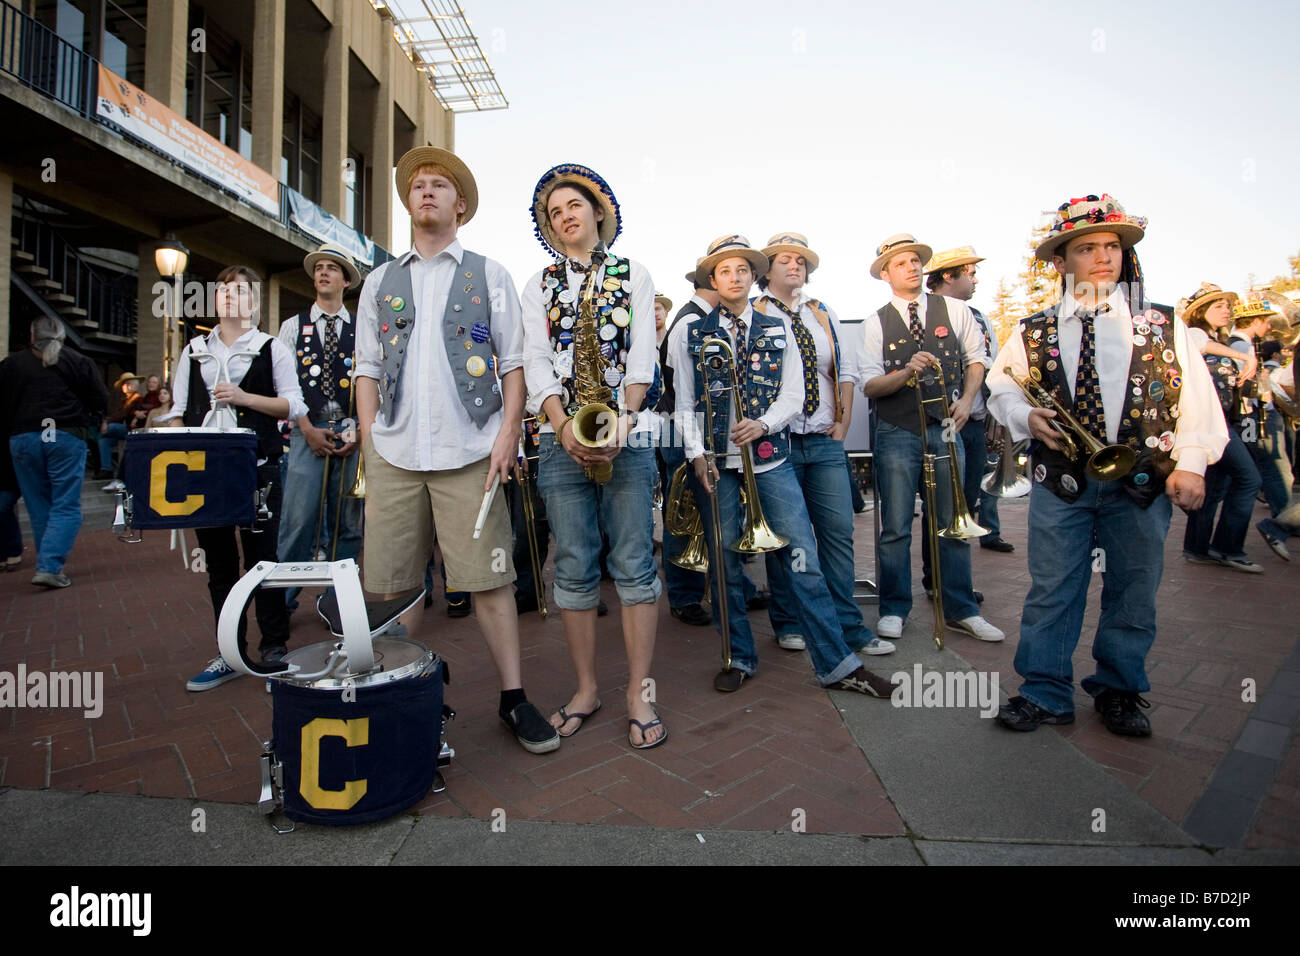 Le Cal Straw Hat Band attend de les faire en 2009 Obama Inauguration à l'Université de Californie à Berkeley. Banque D'Images